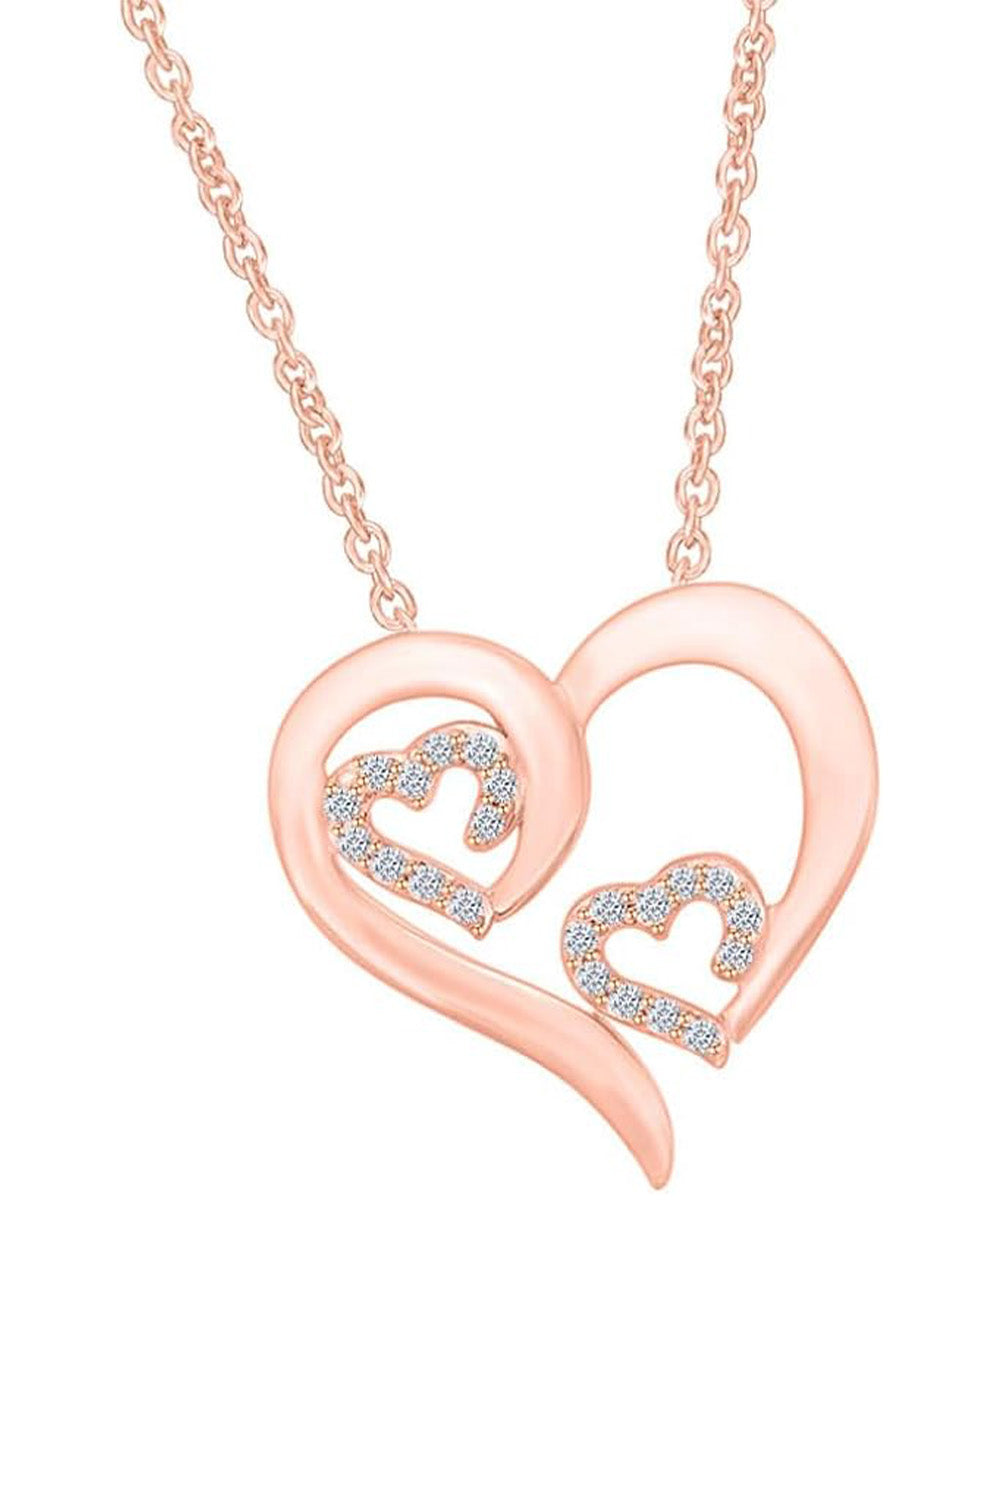 Rose Gold Color Triple Heart Pendant Necklace, Buy Pendant Online 